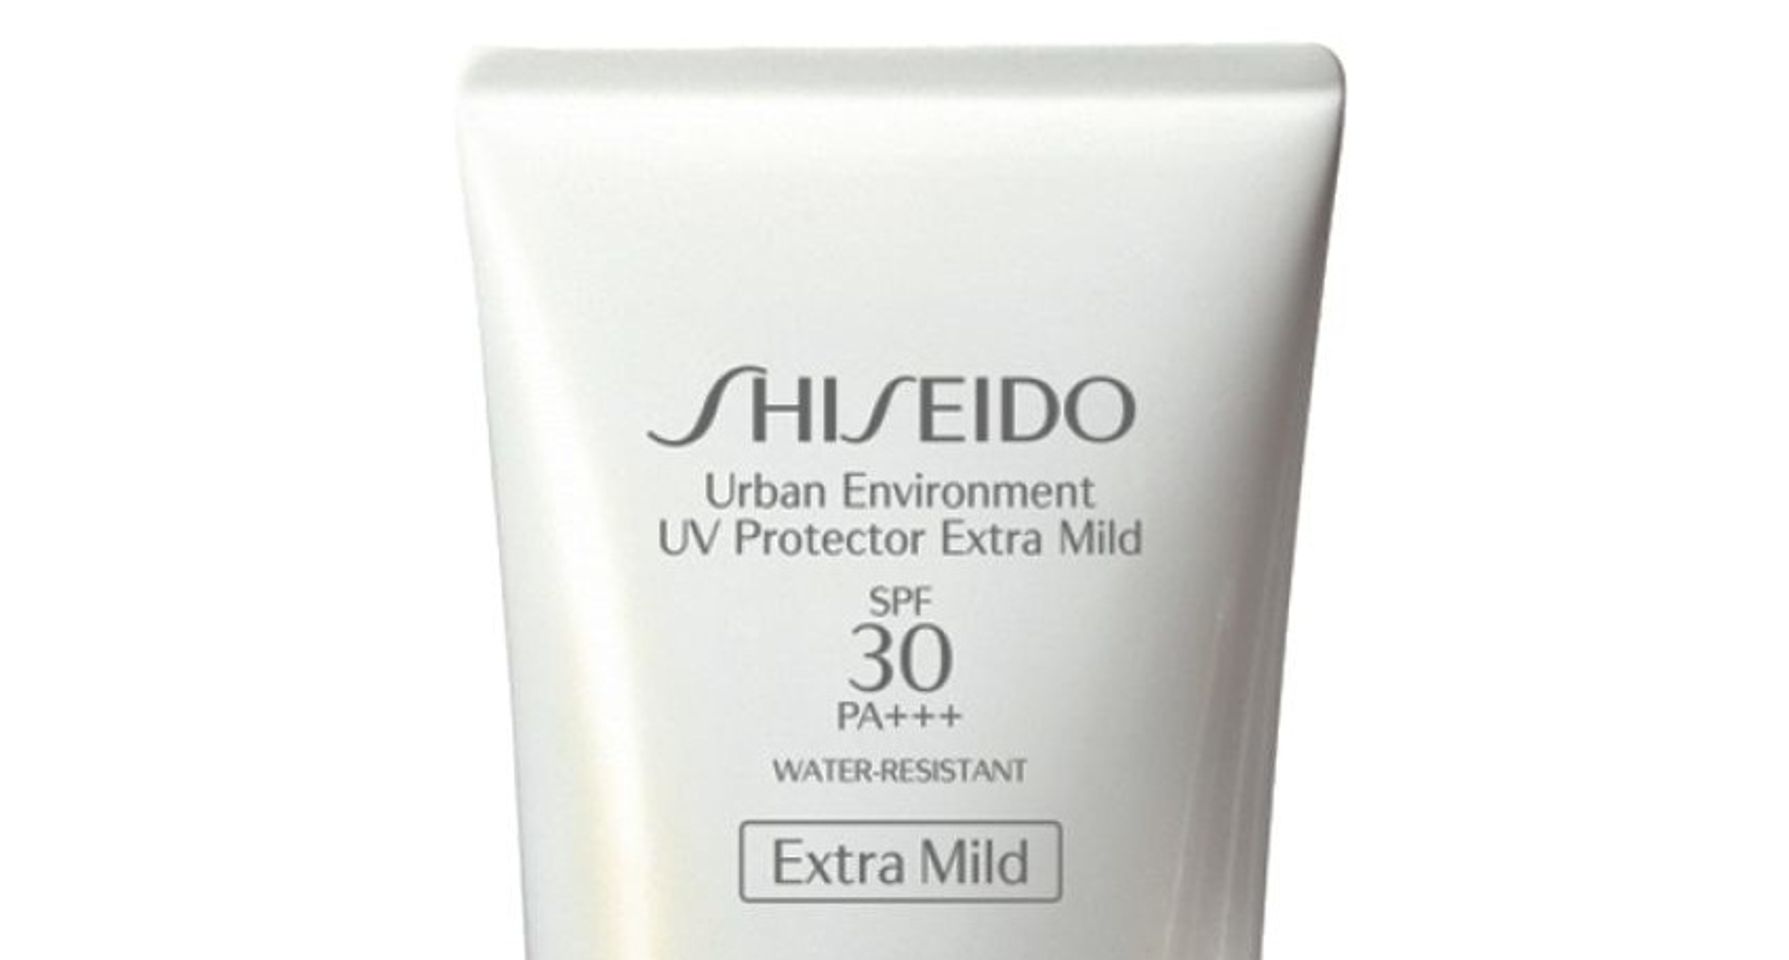 Kem chống nắng Shiseido Urban Environment UV Protector Extra Mild bảo vệ làn da không bị đen với SPF30 PA+++